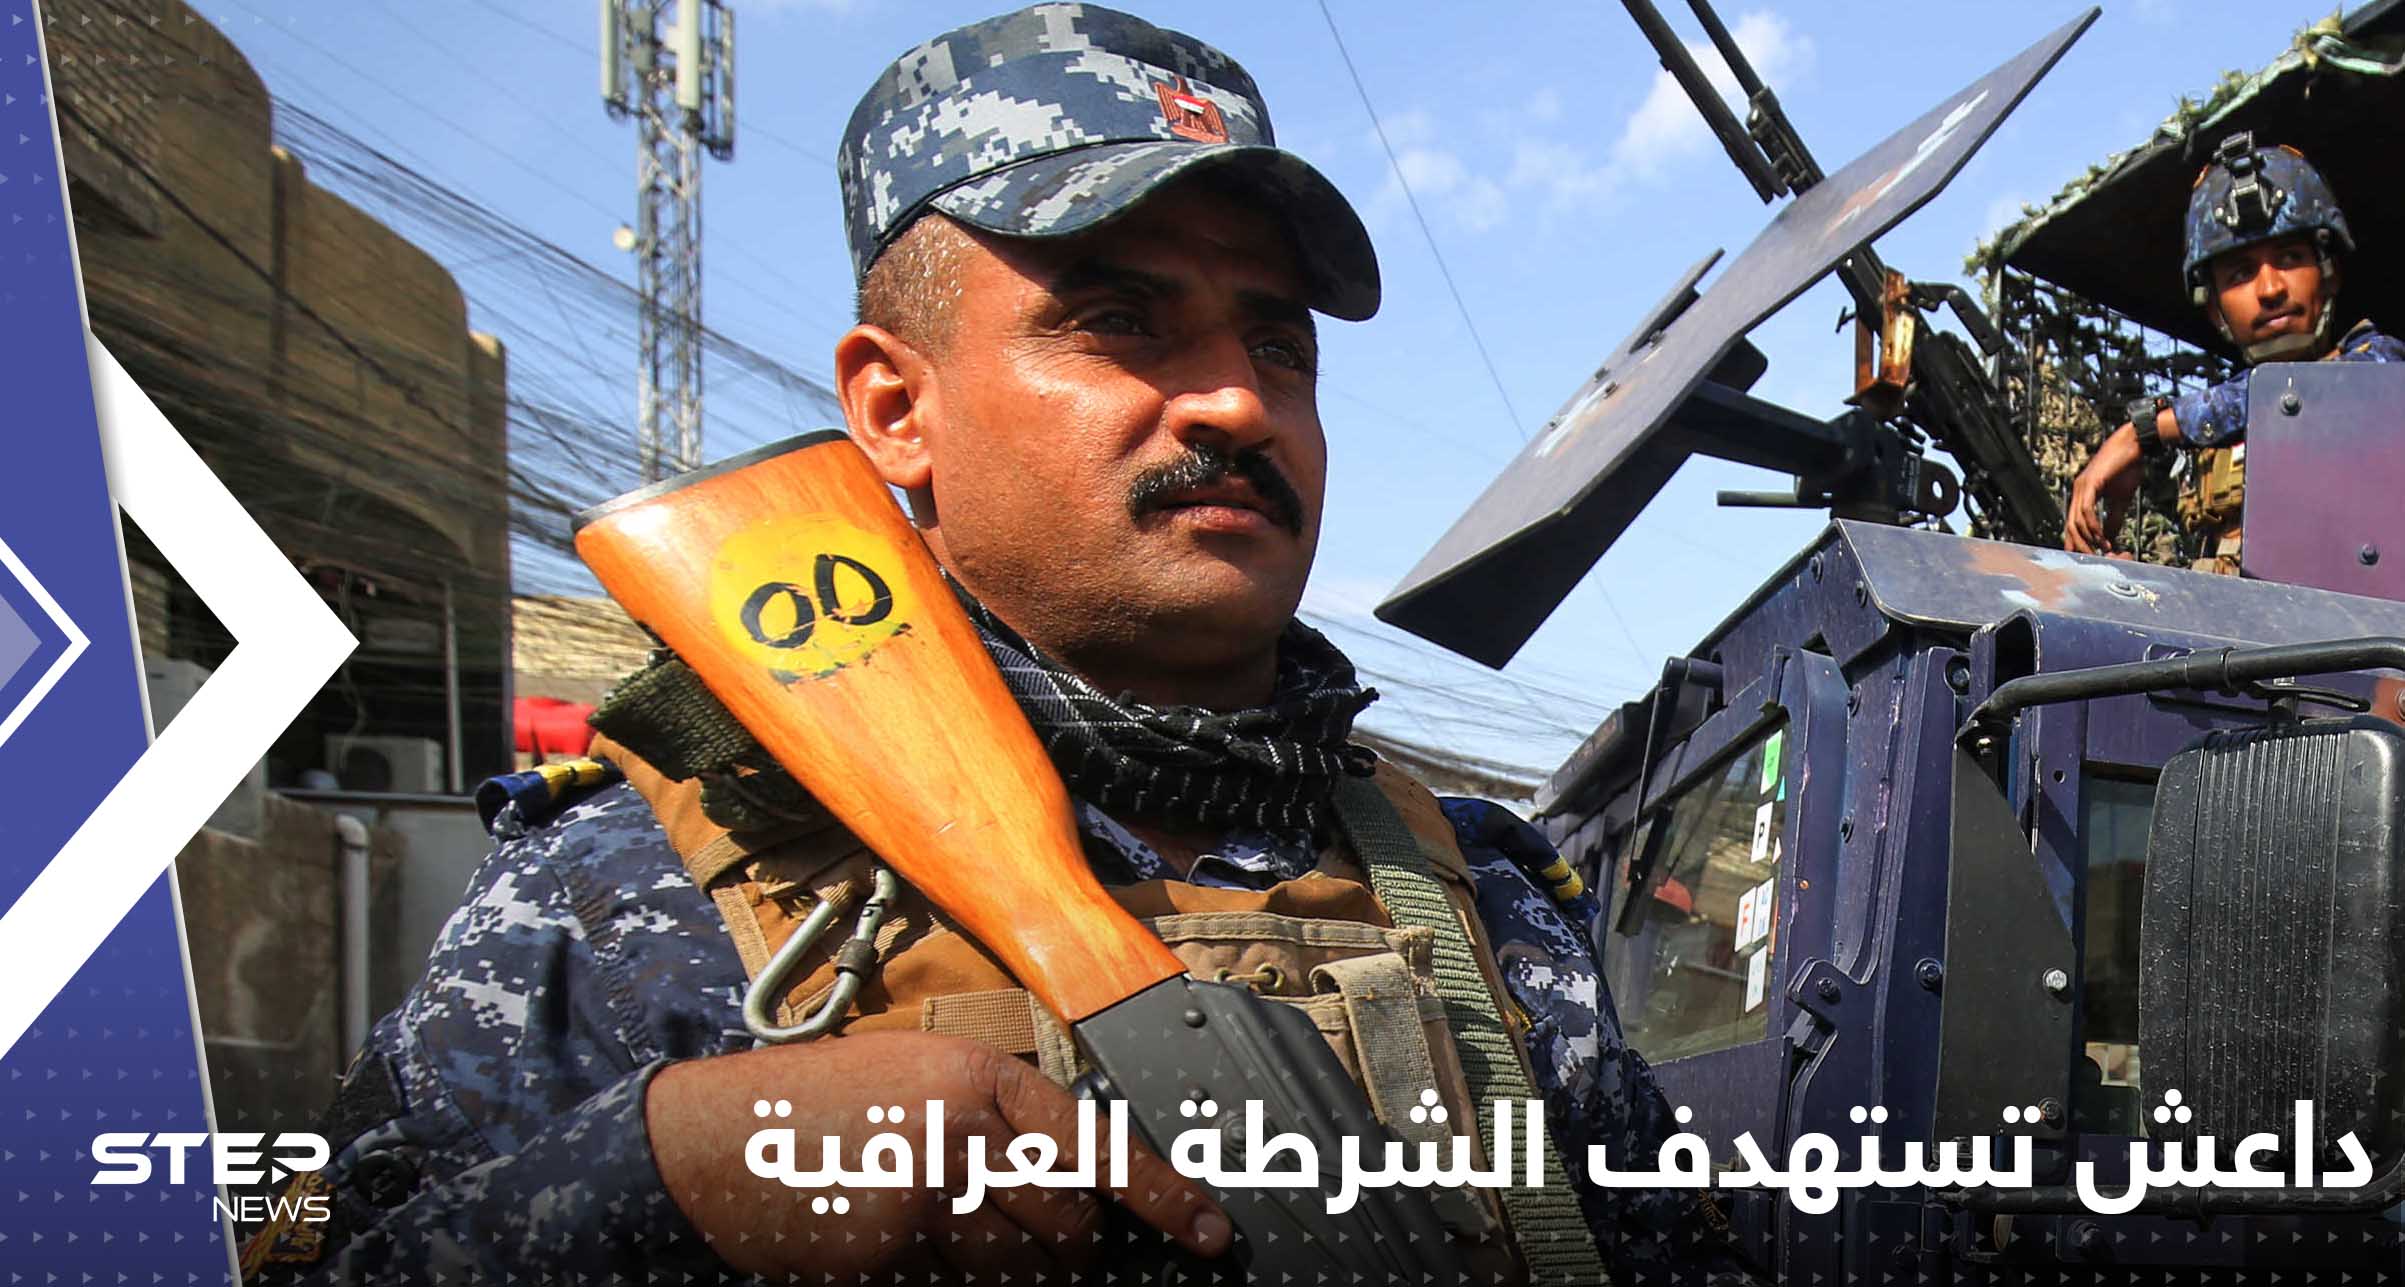 داعش تستهدف الشرطة العراقية